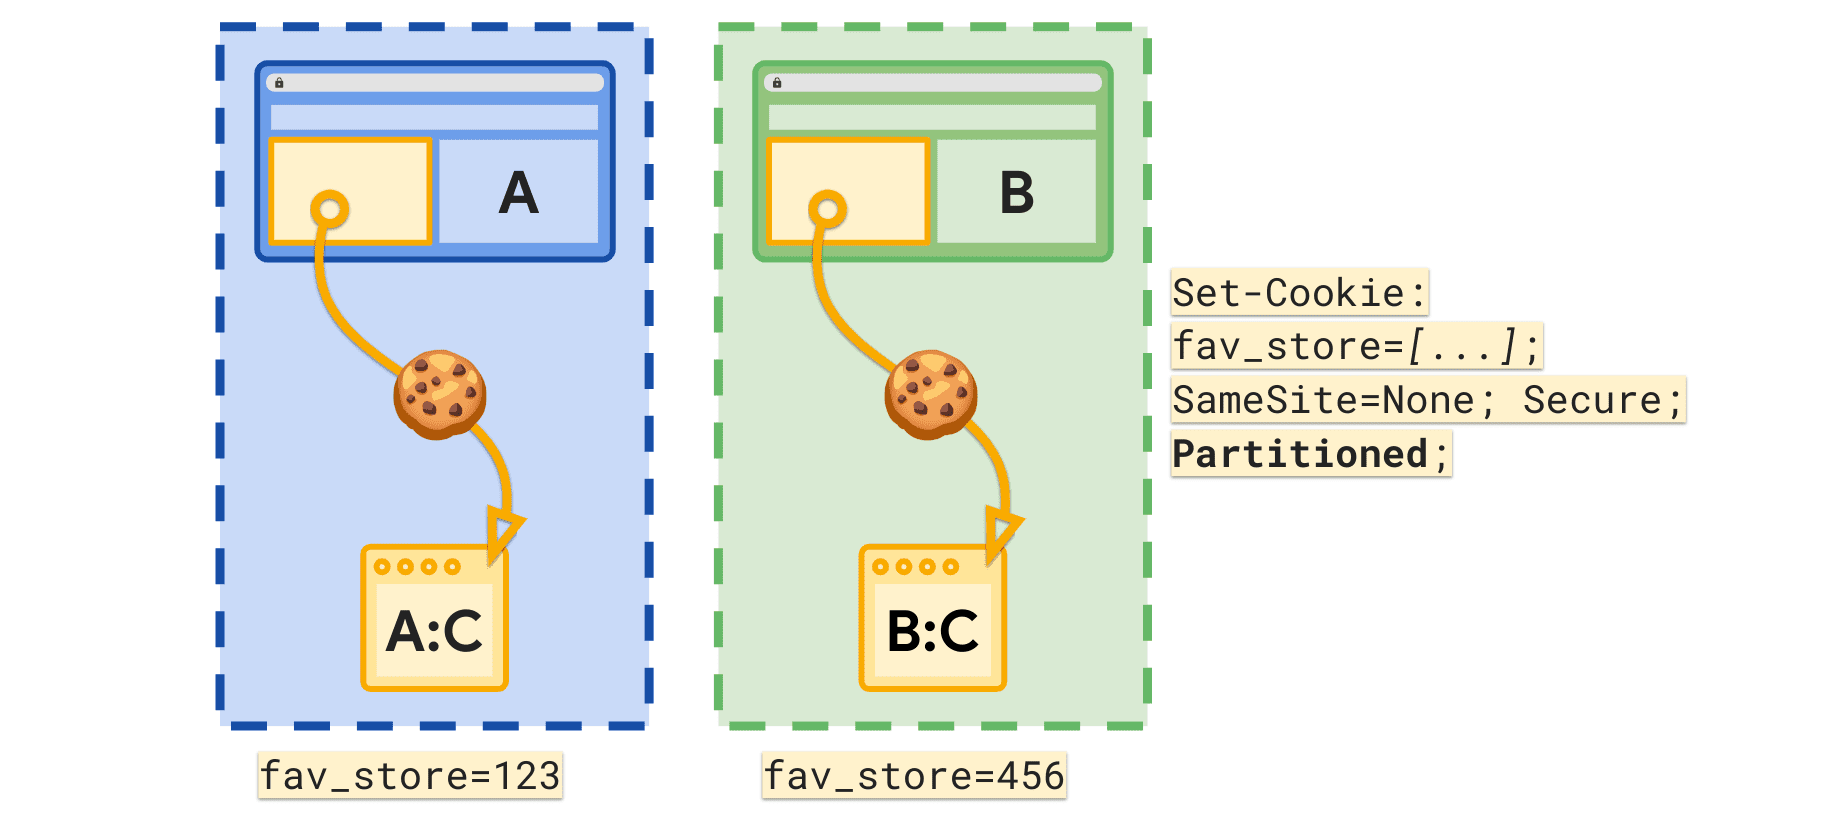 Das Attribut „Partitioned“ (Partitioniert) ermöglicht es, für jede Website der obersten Ebene ein separates „fav_store“-Cookie zu setzen.